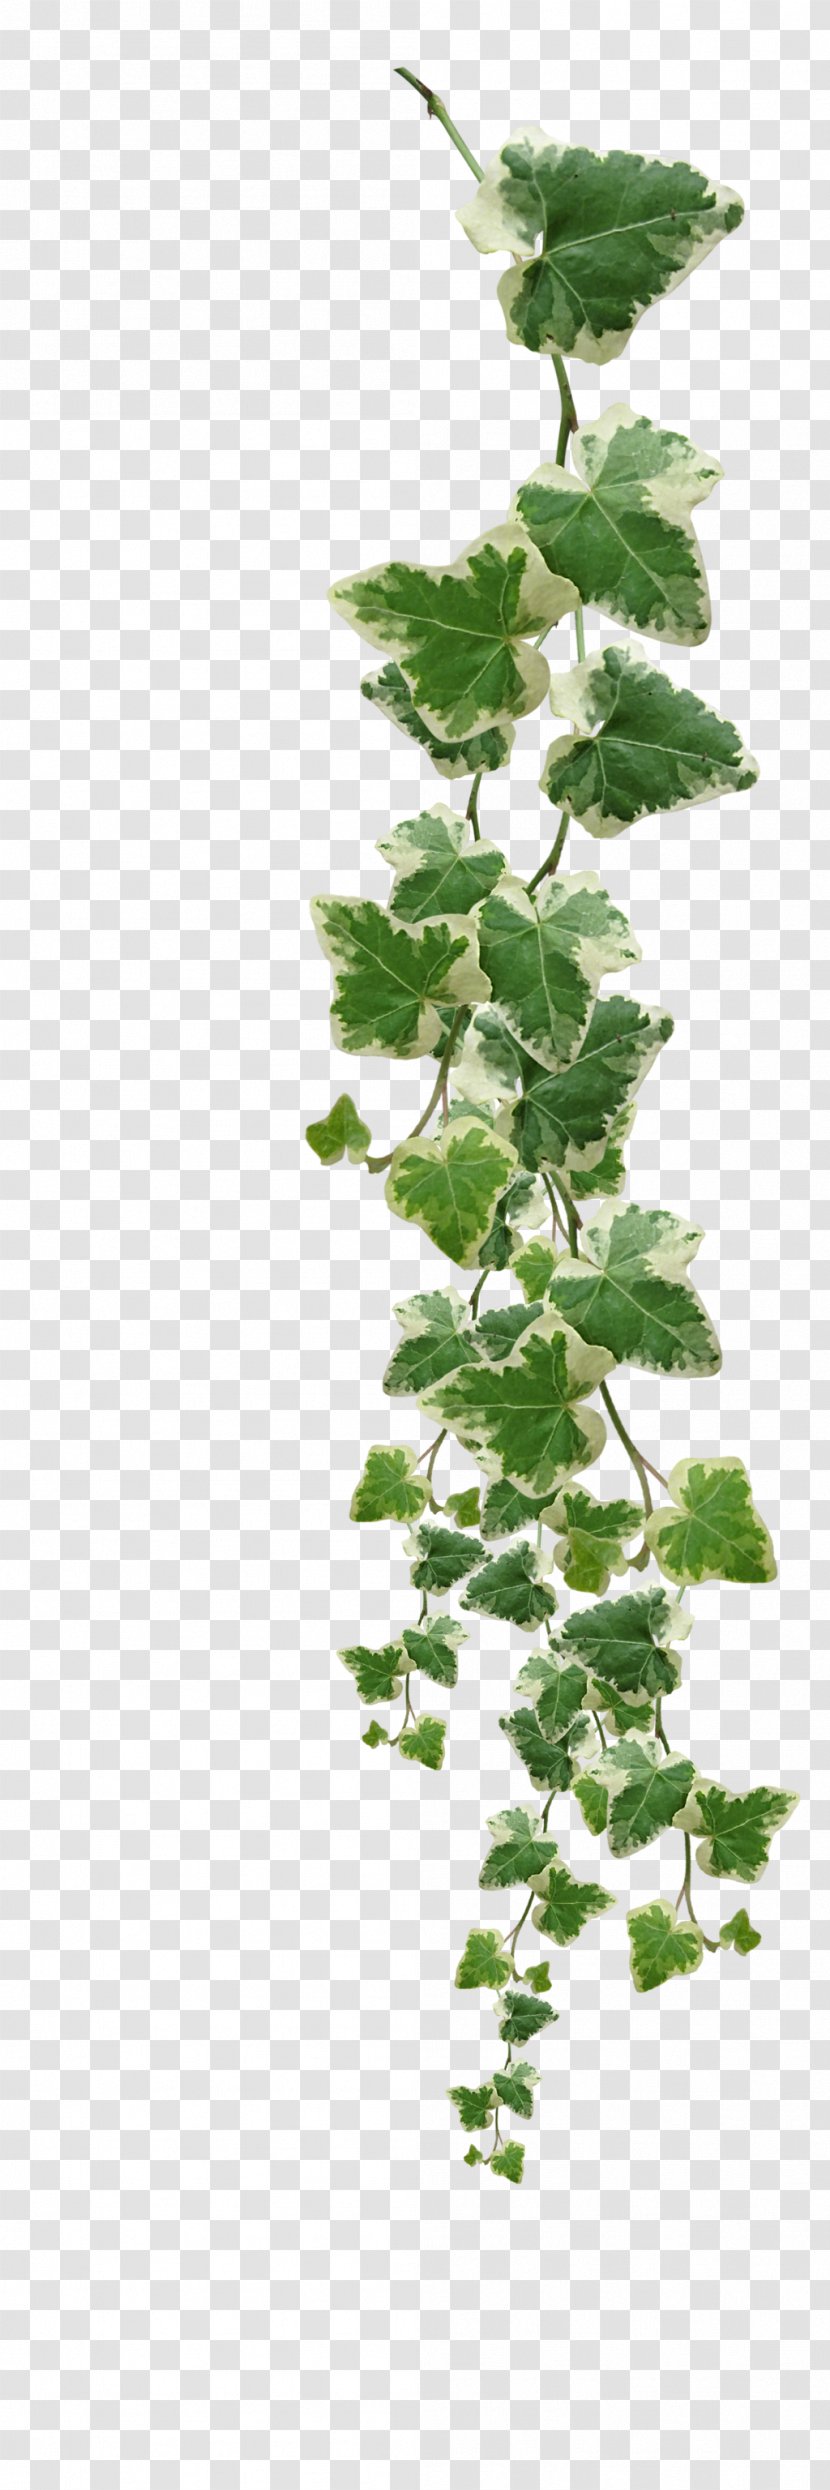 Common Ivy Vine Muscadine Grape Plant - Fatshedera Lizei - Vines Plants Pictures Transparent PNG